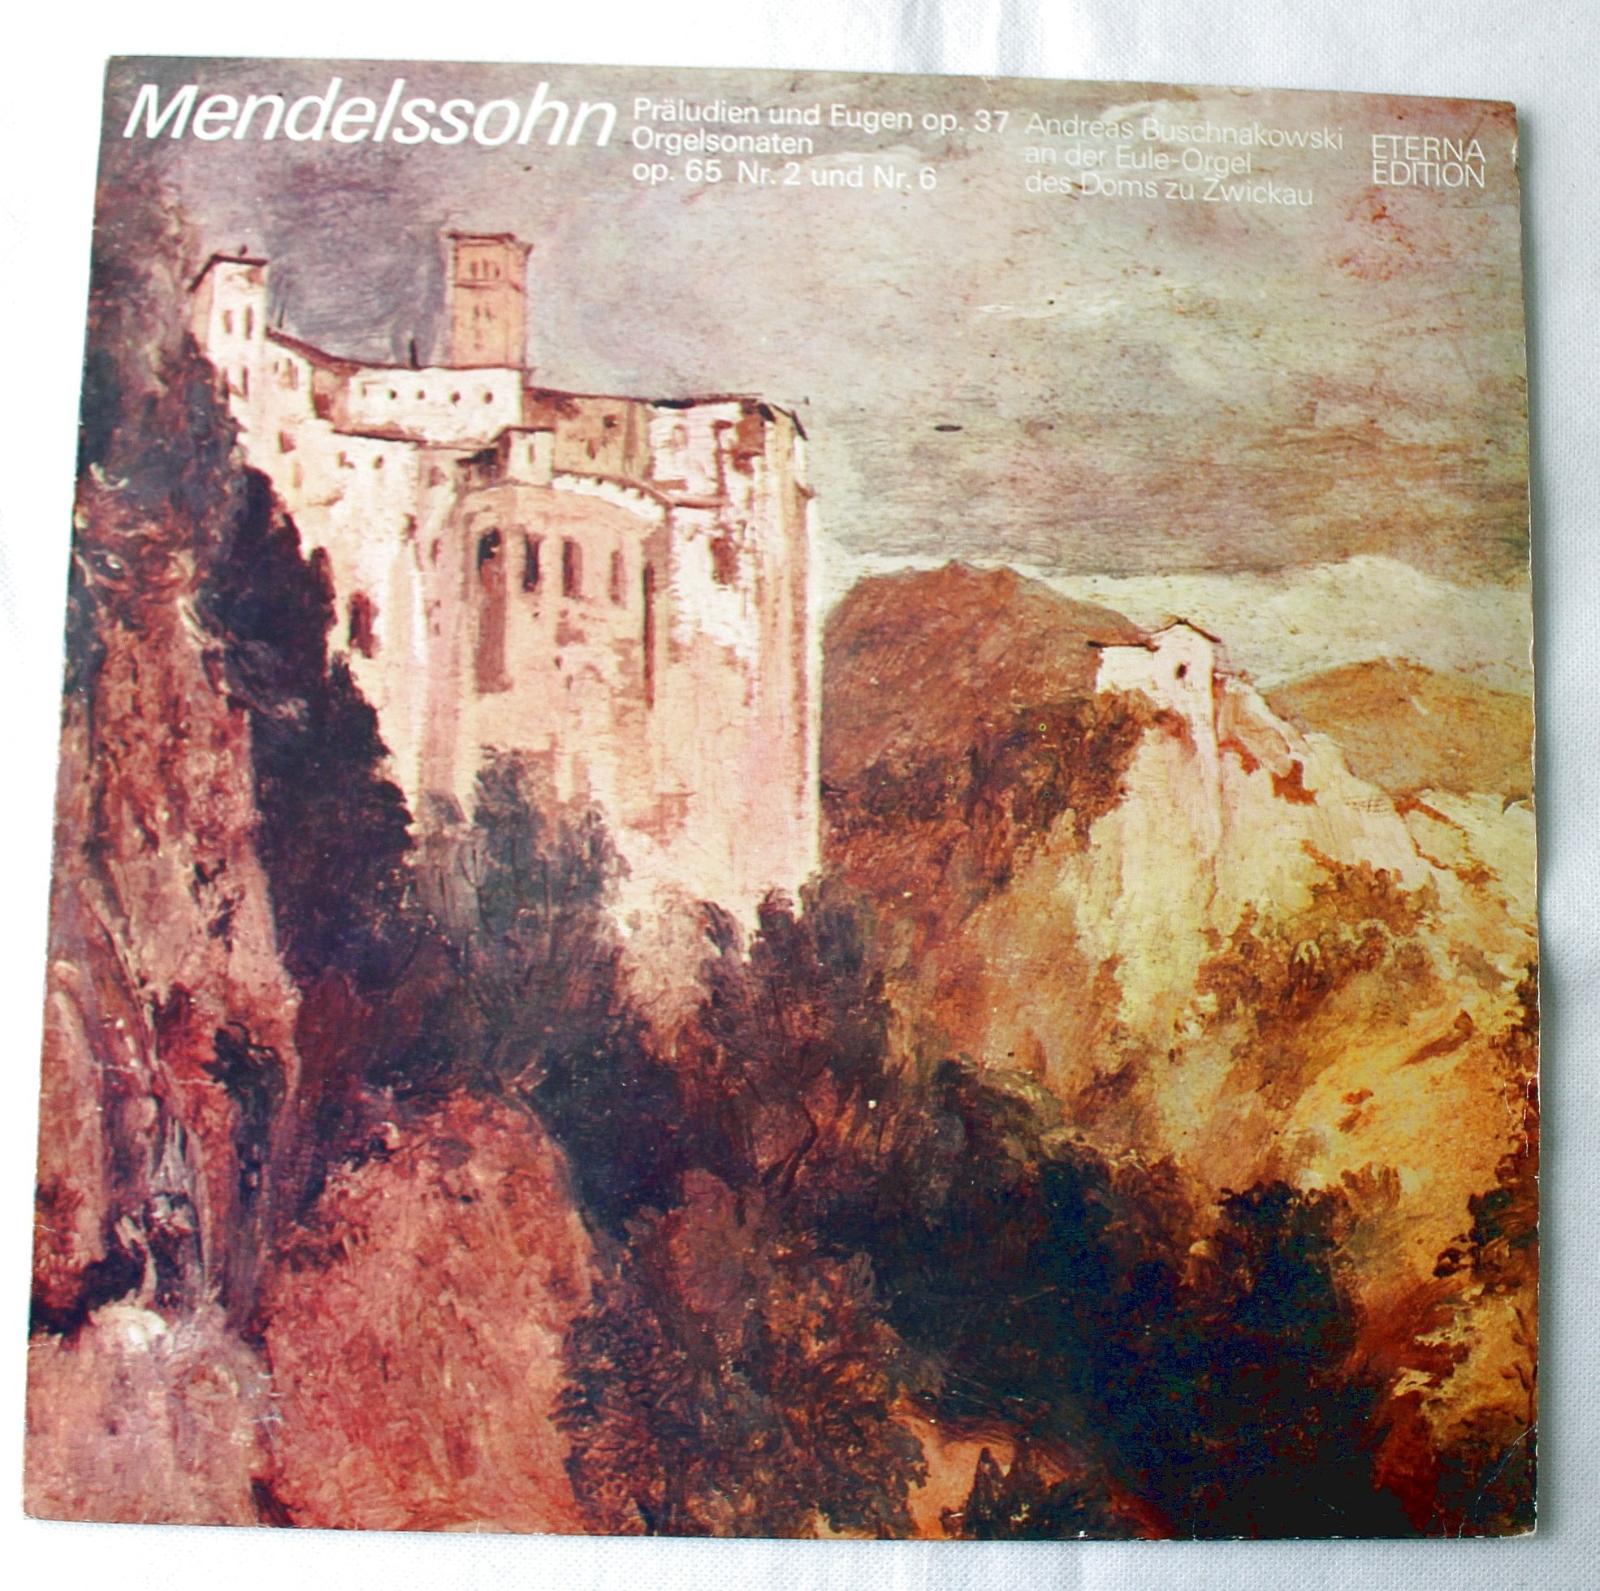 LP - Mendelssohn Präludien und Eugen op. 37 (a10) - Hudba